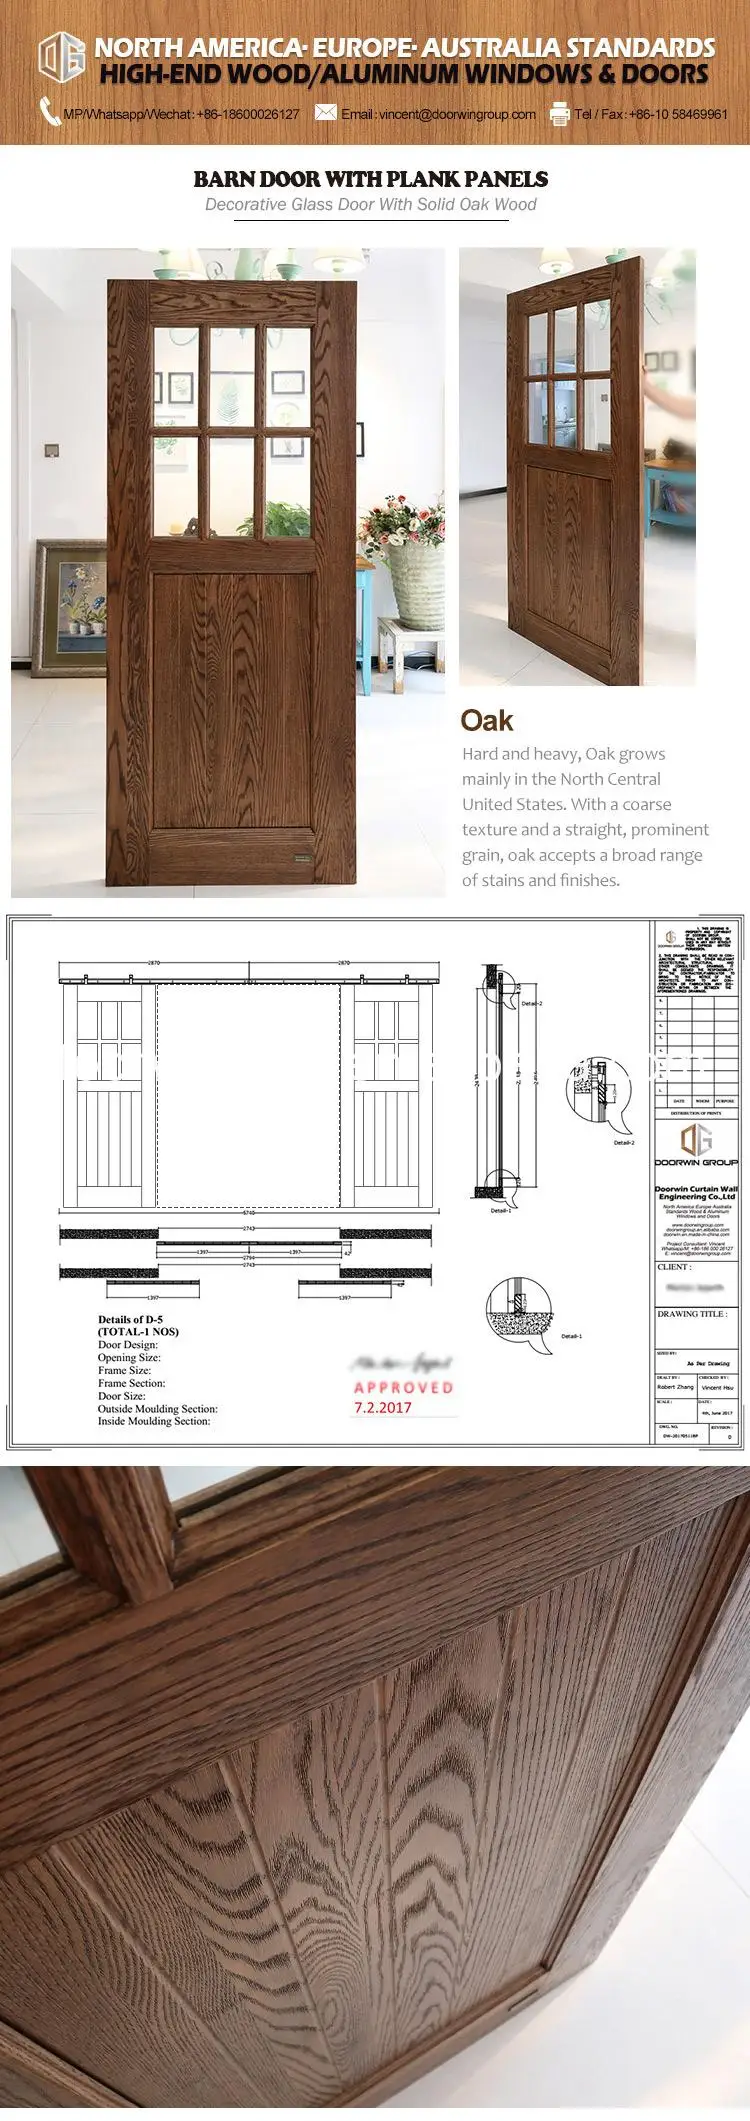 Factory made temporary barn door soundproof interior doors solid wood